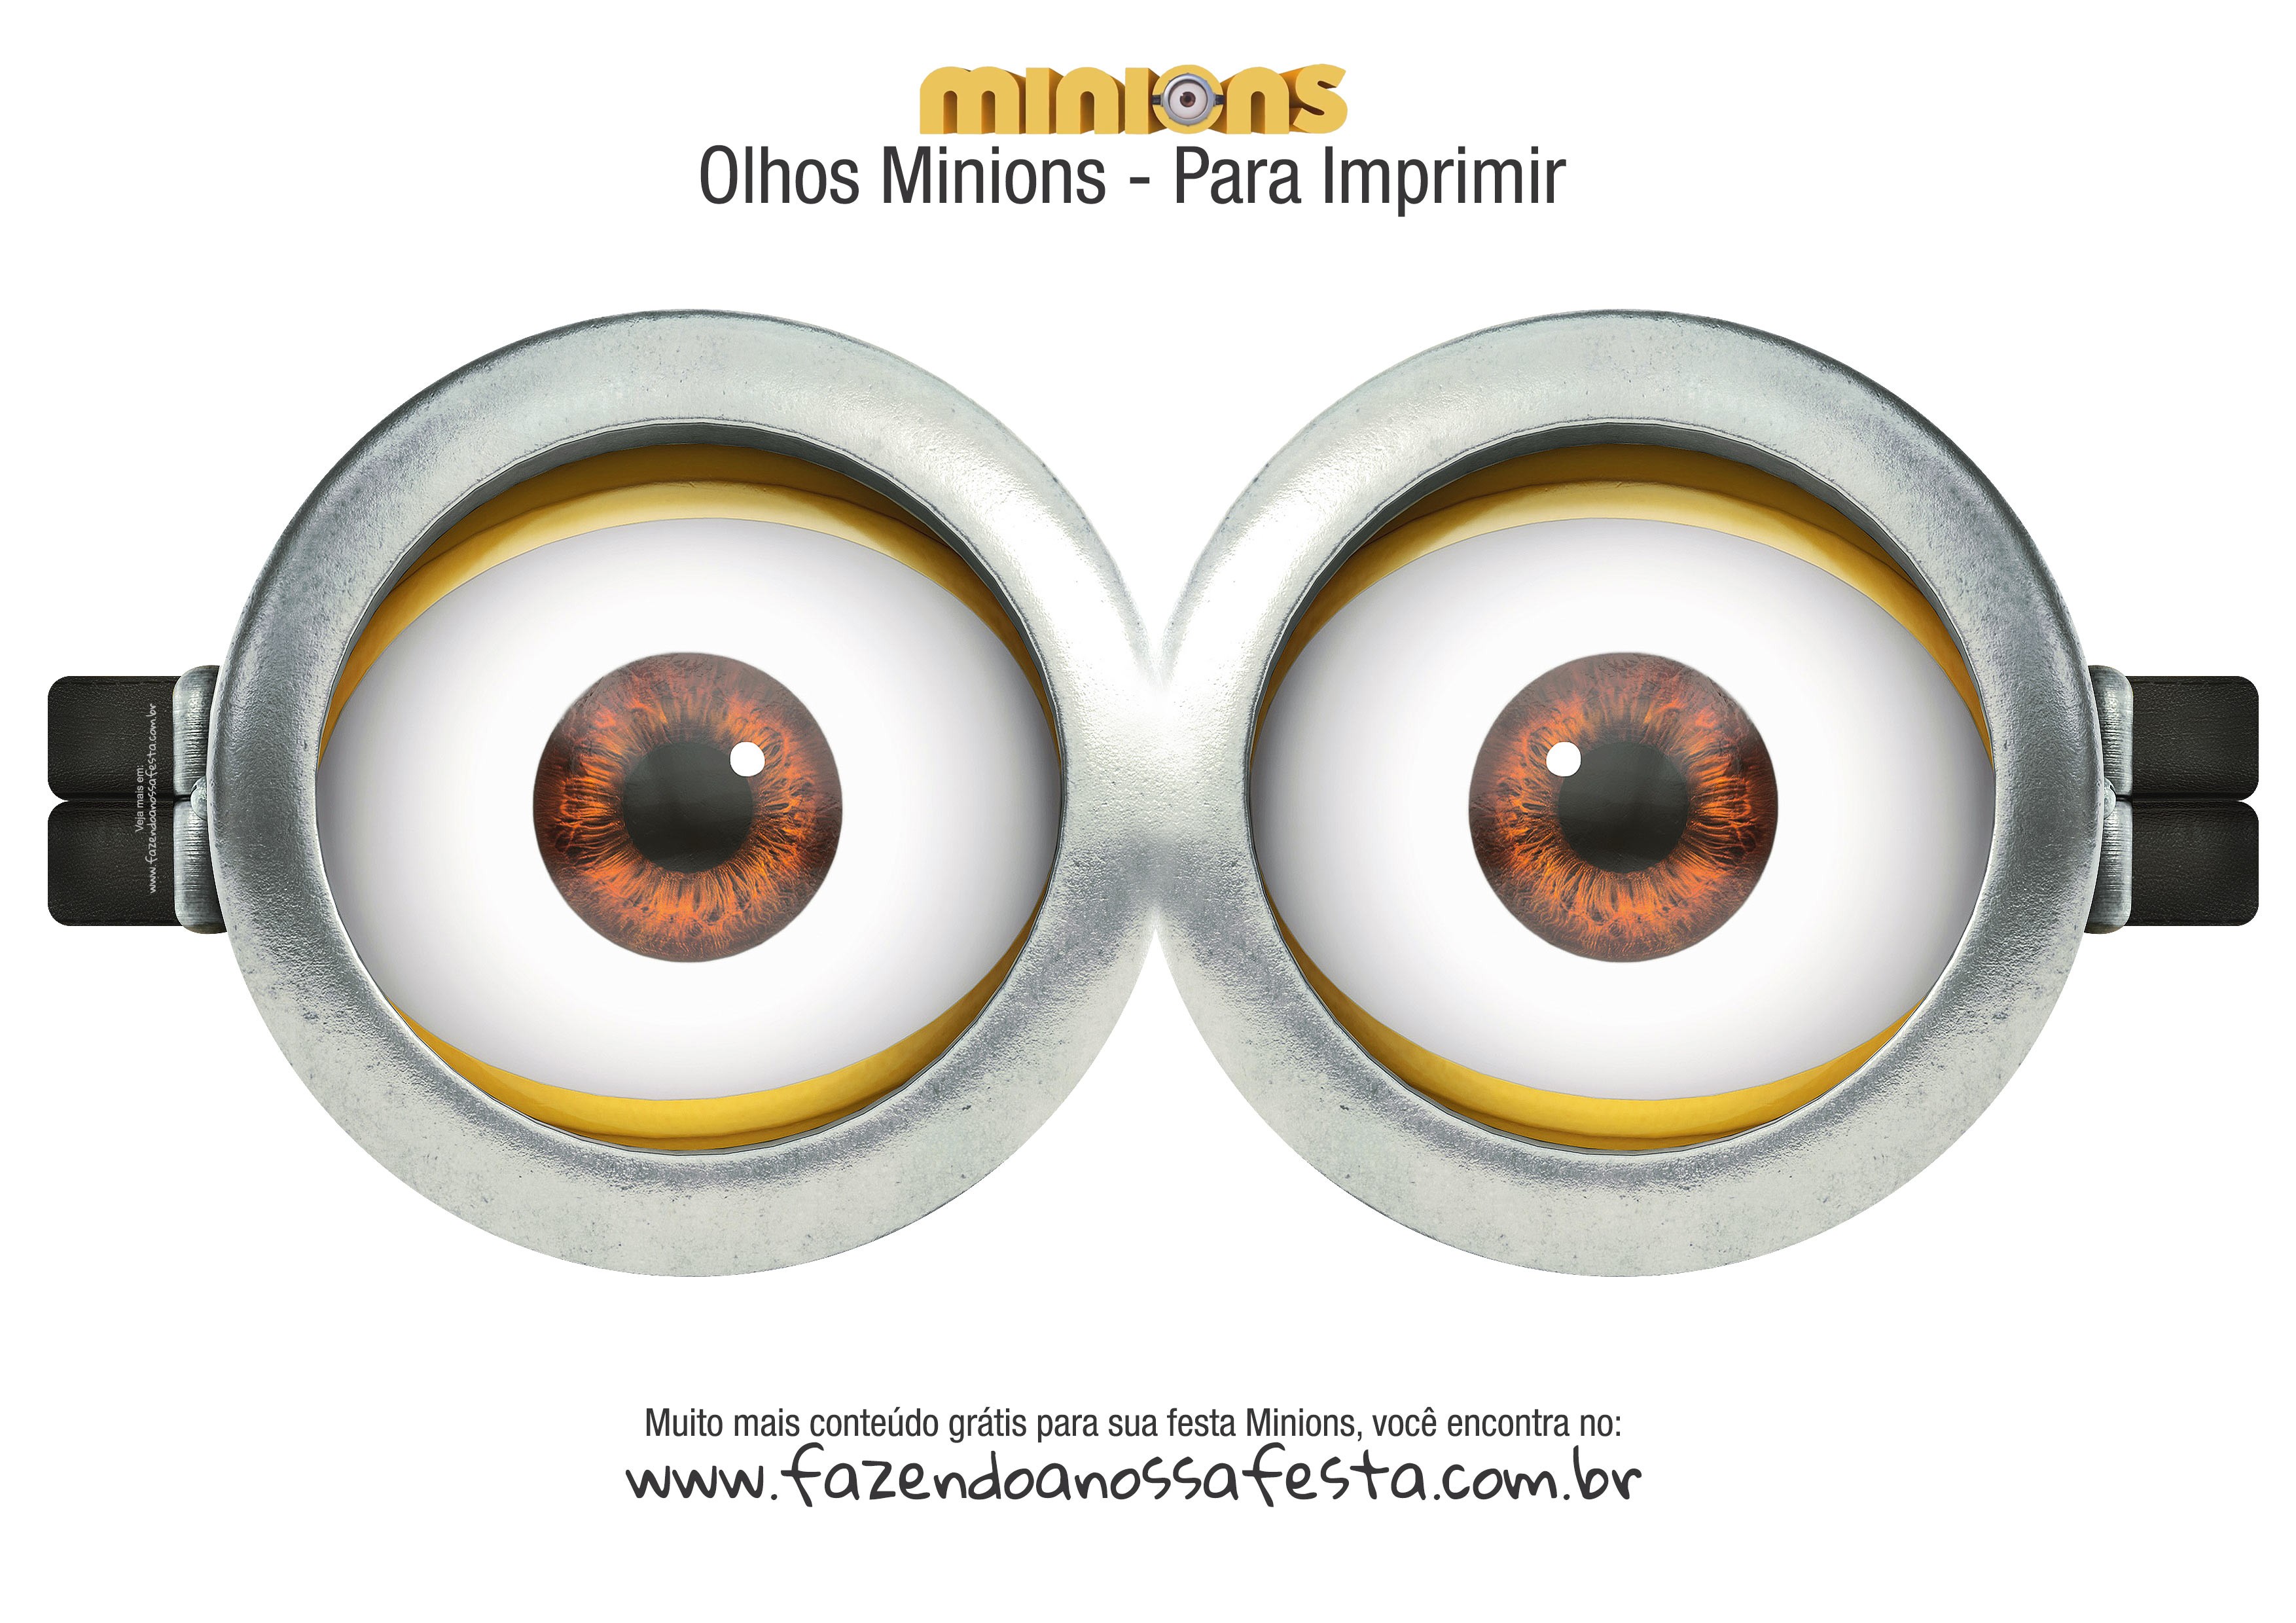 Olhos Minions 2 eyes